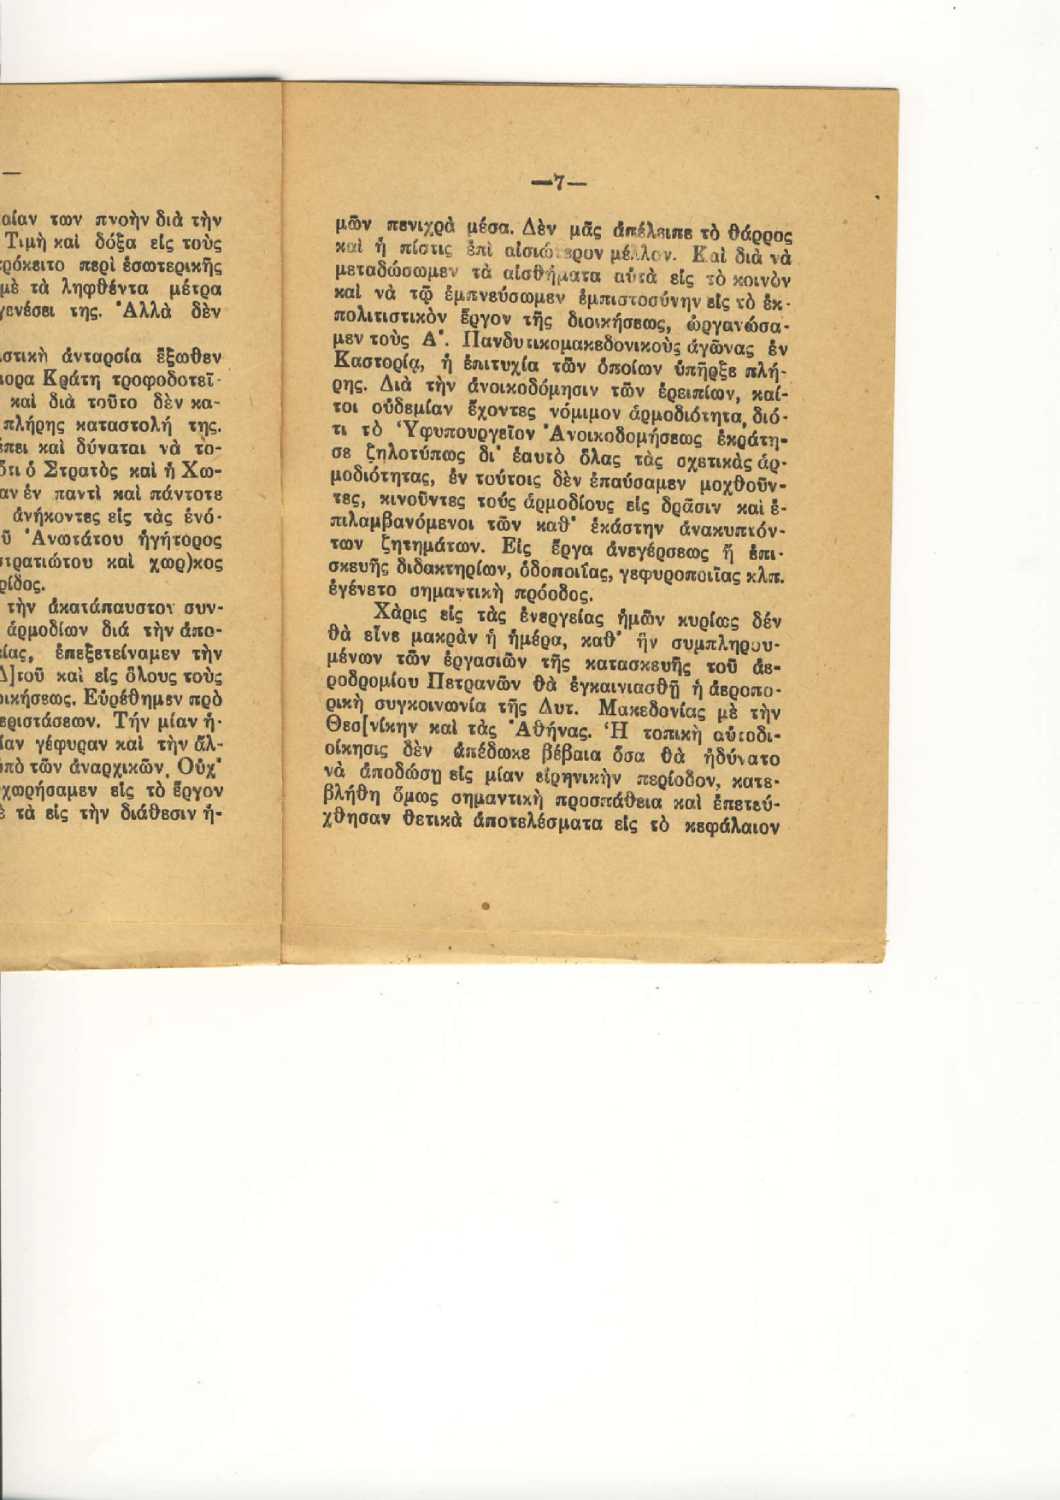 ΑΠΟΧΑΙΡΕΤΙΣΜΟΣ Γ.Δ.Δ.Μ ΦΕΒΡΟΥΑΡΙΟΣ 1947 (7)